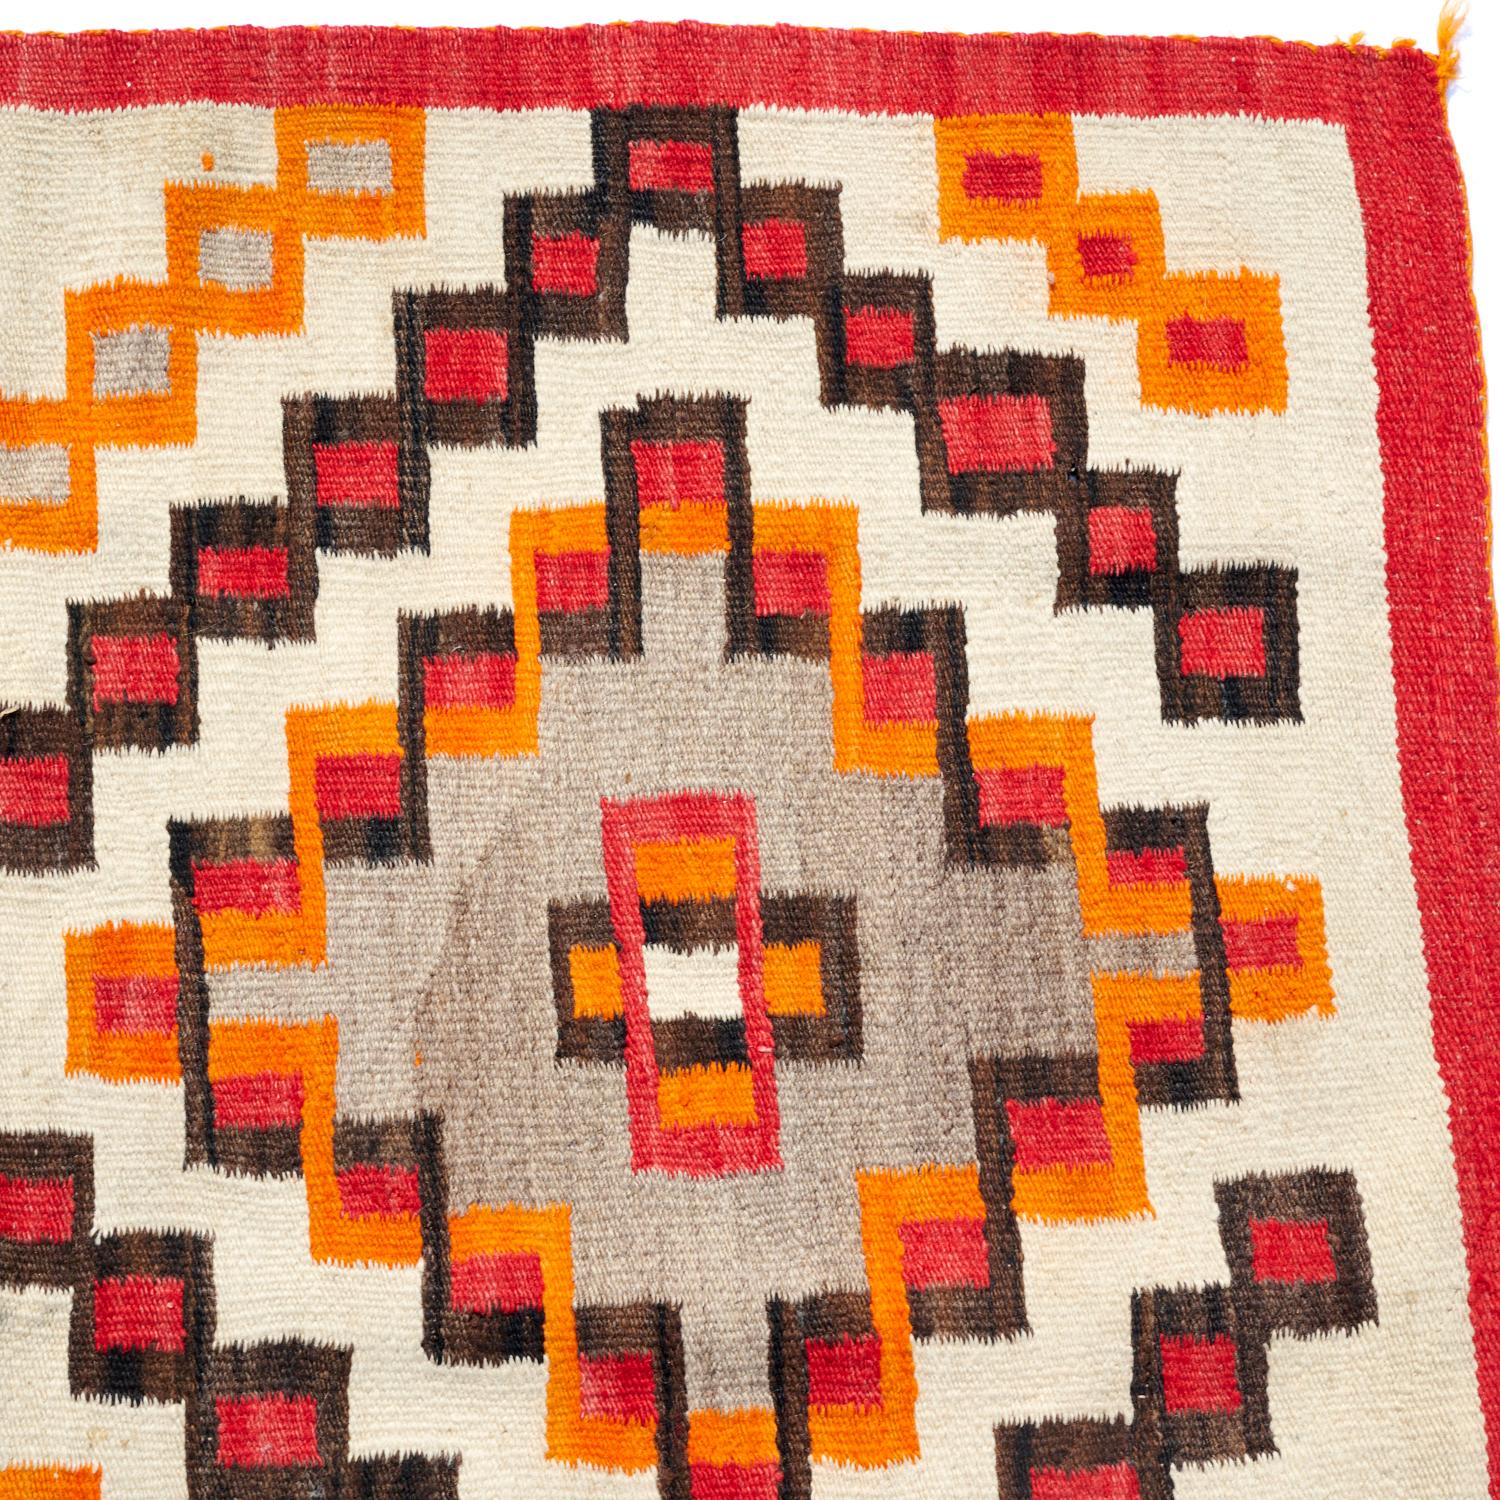 how to hang navajo rug on wall